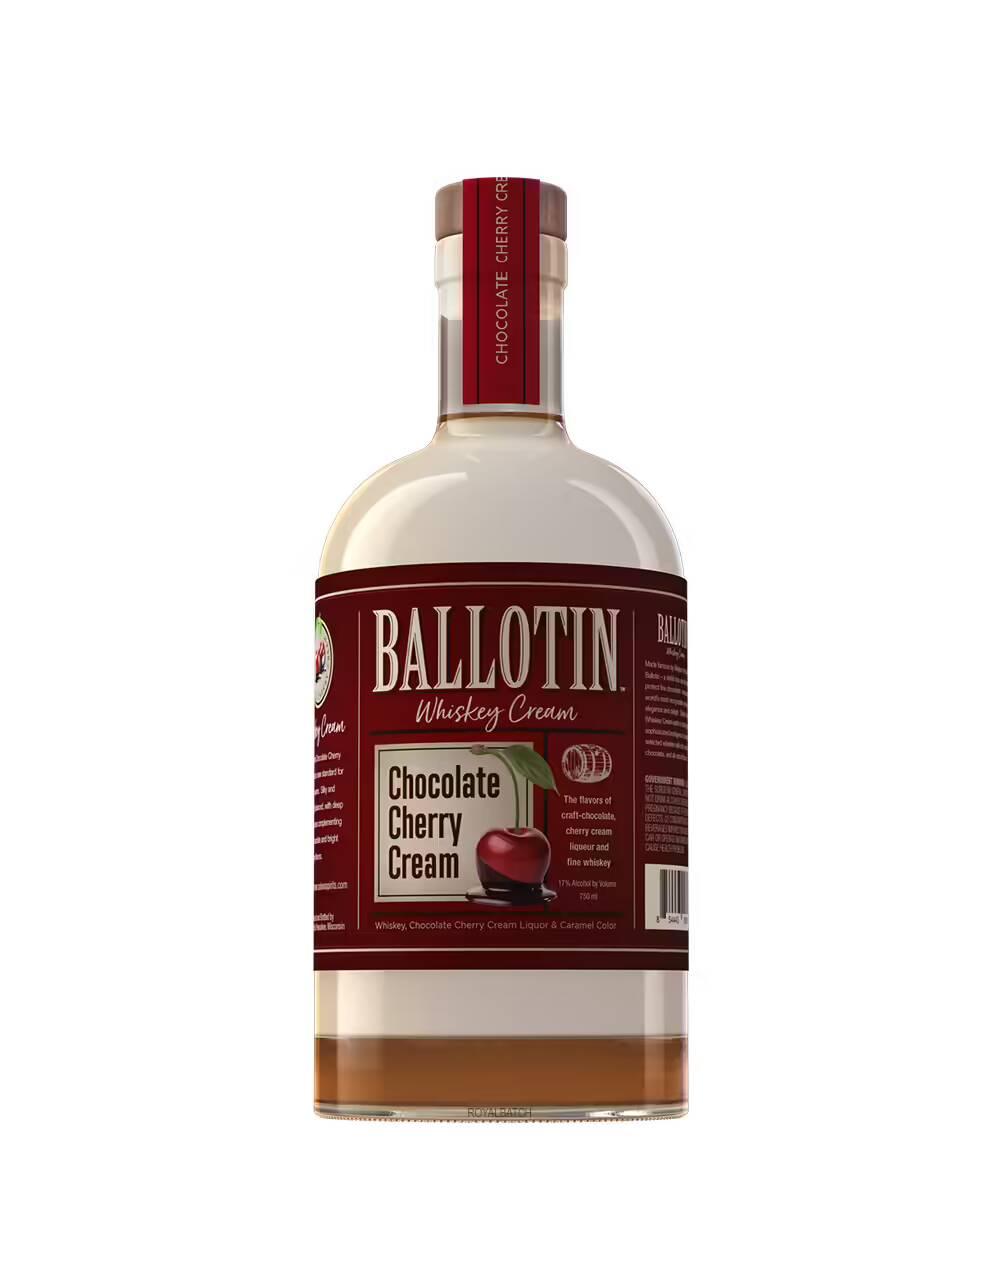 Ballotin Chocolate Cherry Cream Flavored Whiskey